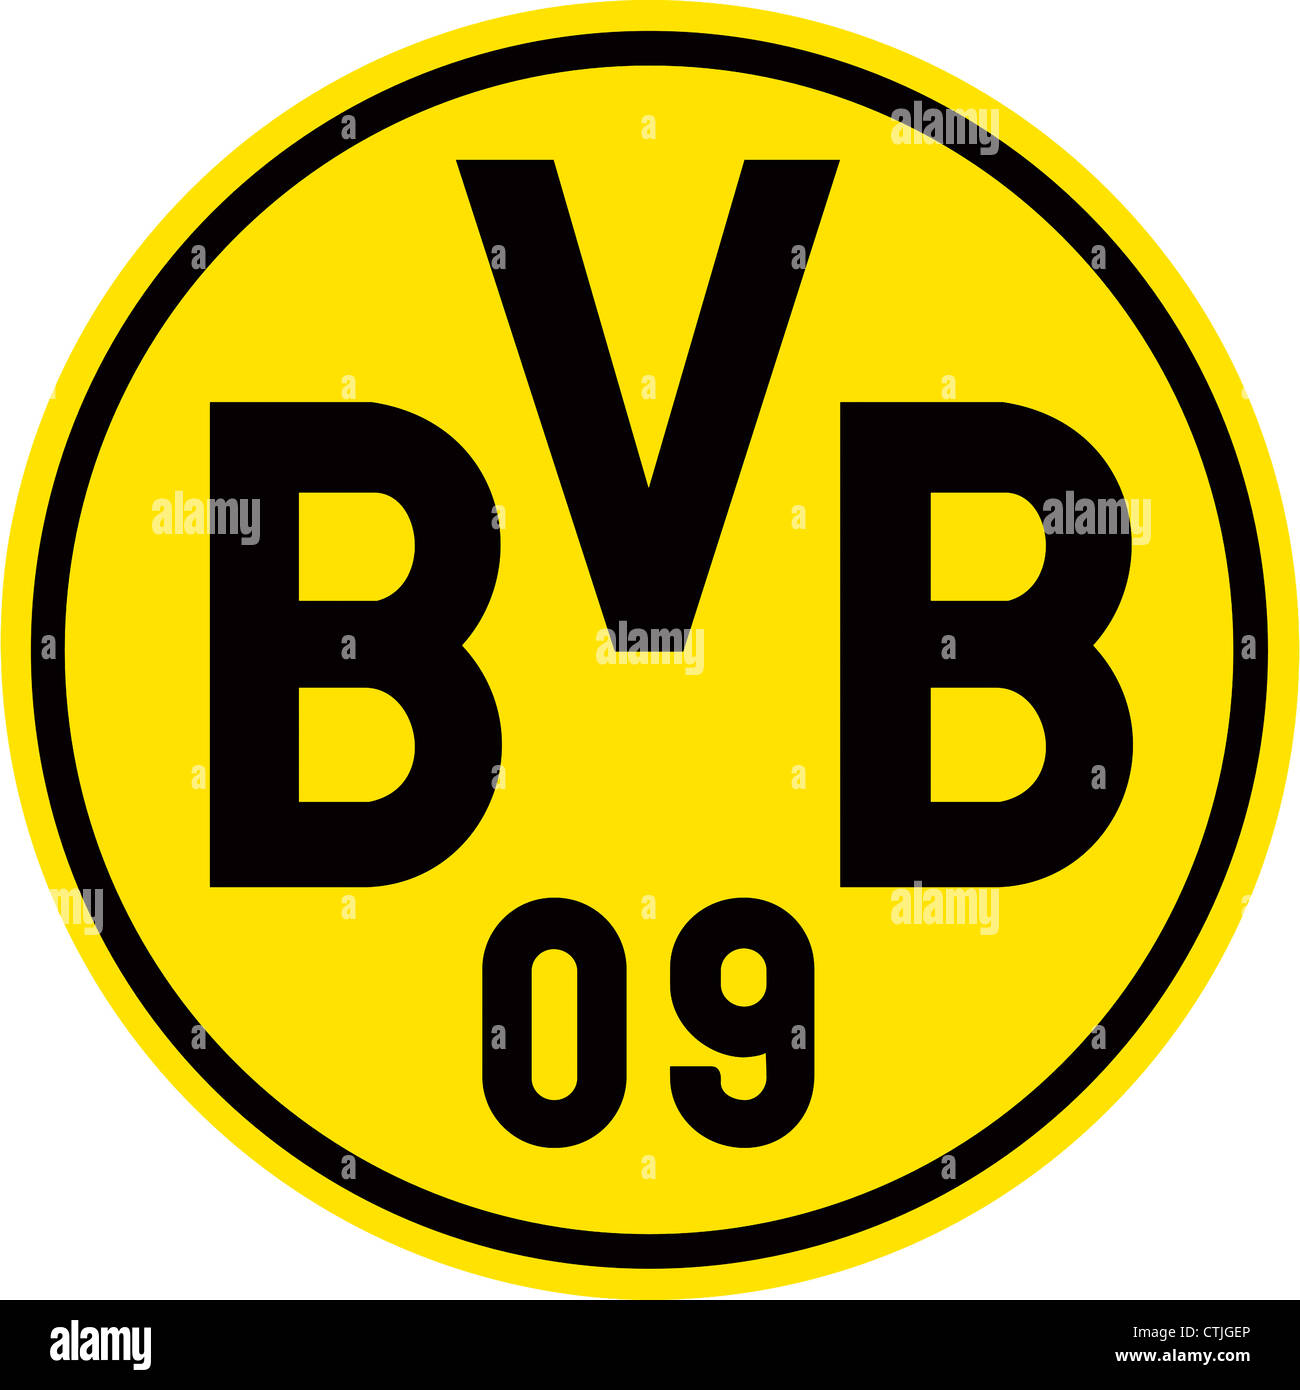 Logo de l'équipe de football allemande BVB Borussia Dortmund Photo Stock -  Alamy